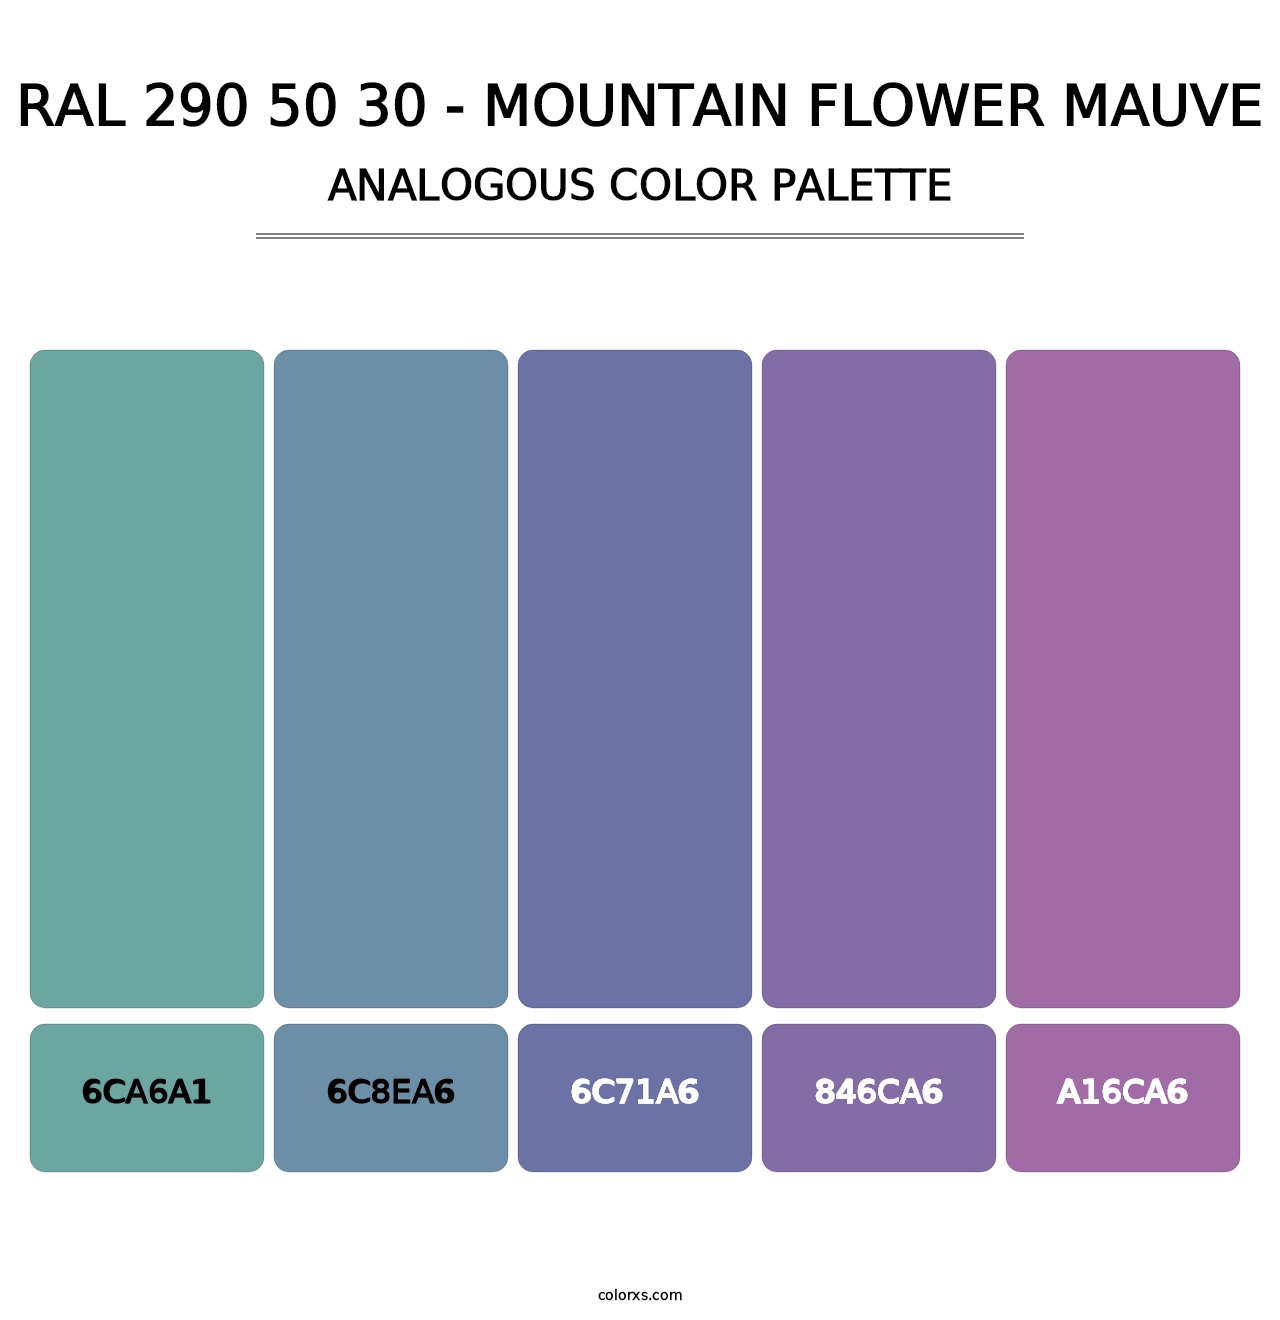 RAL 290 50 30 - Mountain Flower Mauve - Analogous Color Palette